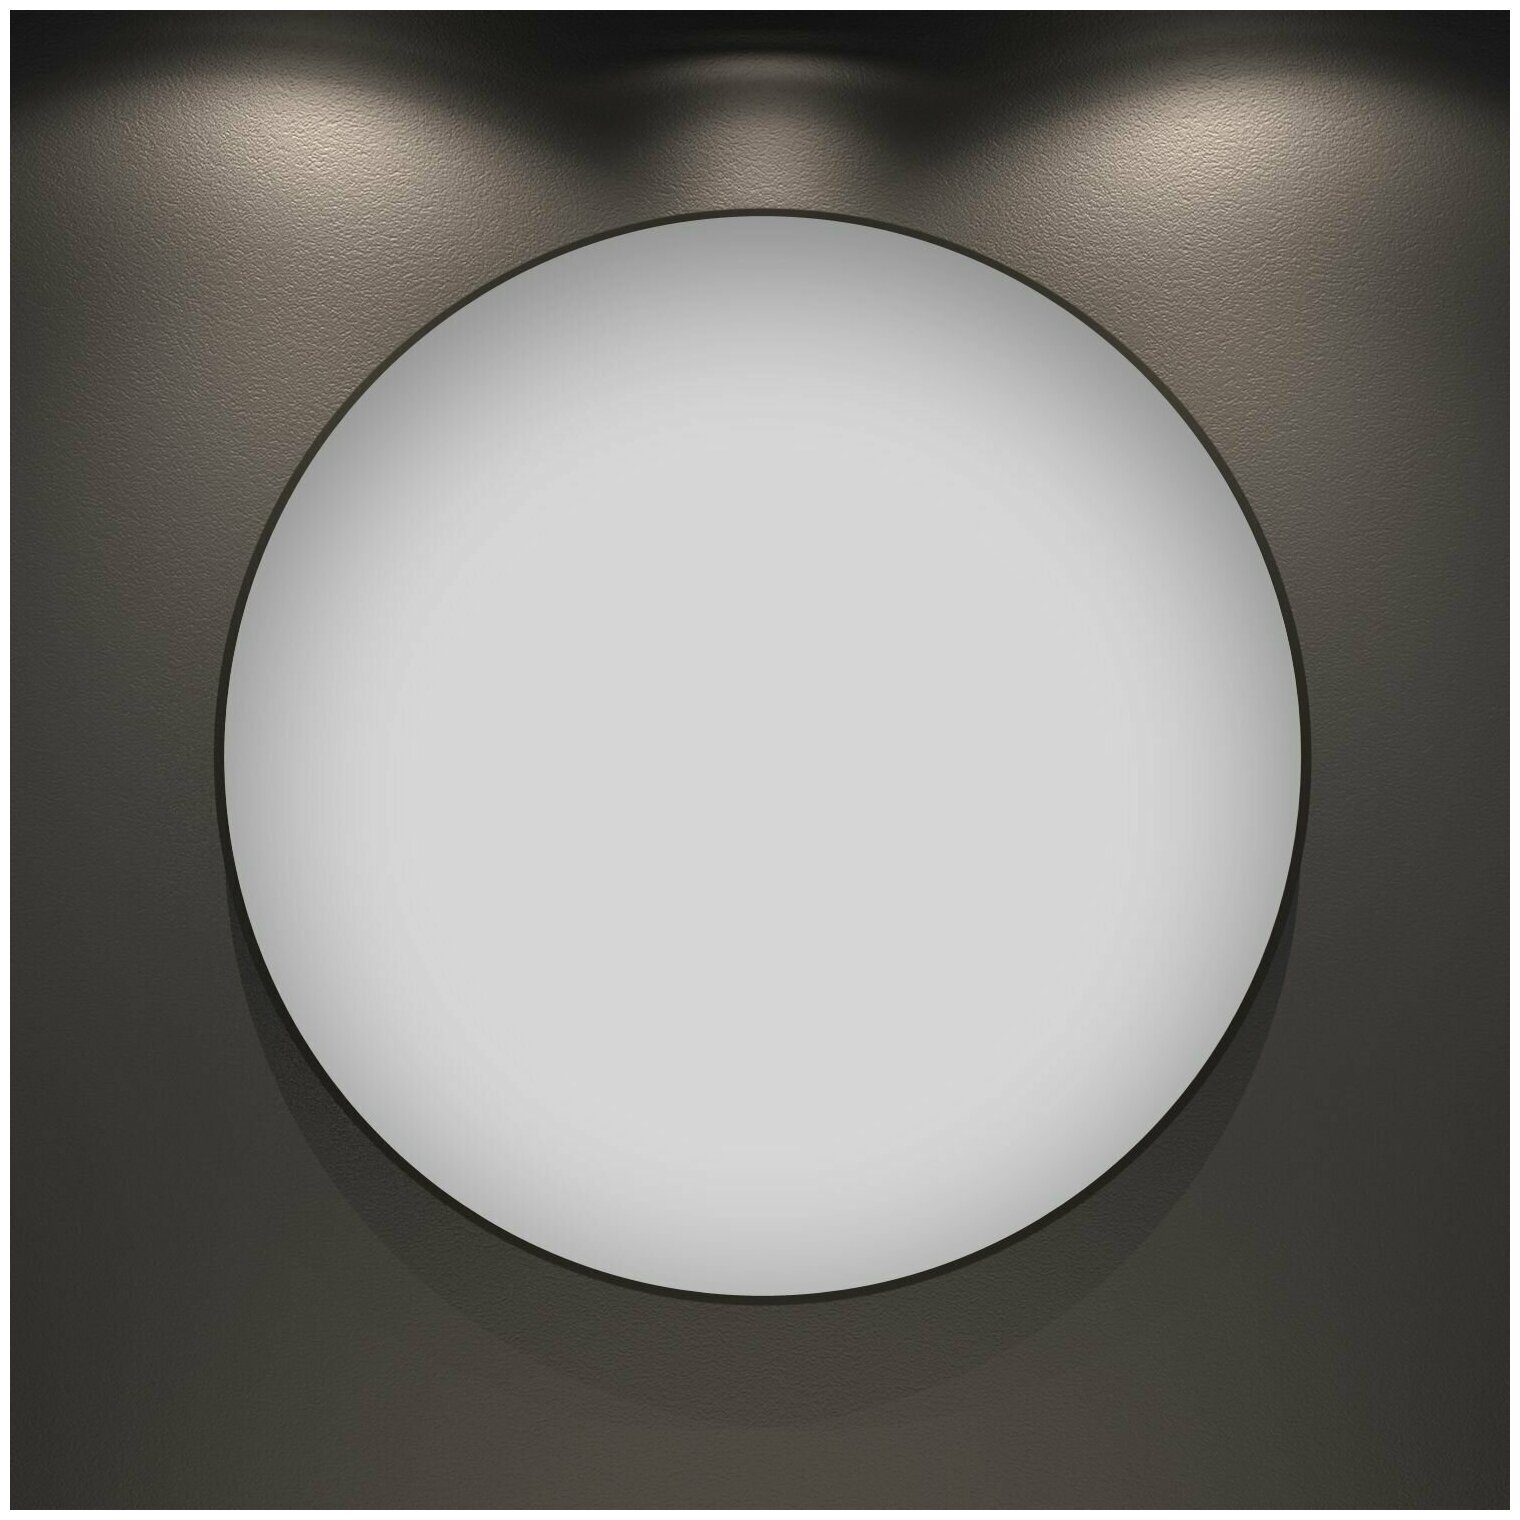 Настенное зеркало в ванную Wellsee 7 Rays' Spectrum 172200010 : влагостойкое круглое зеркало 50 см с черным матовым контуром